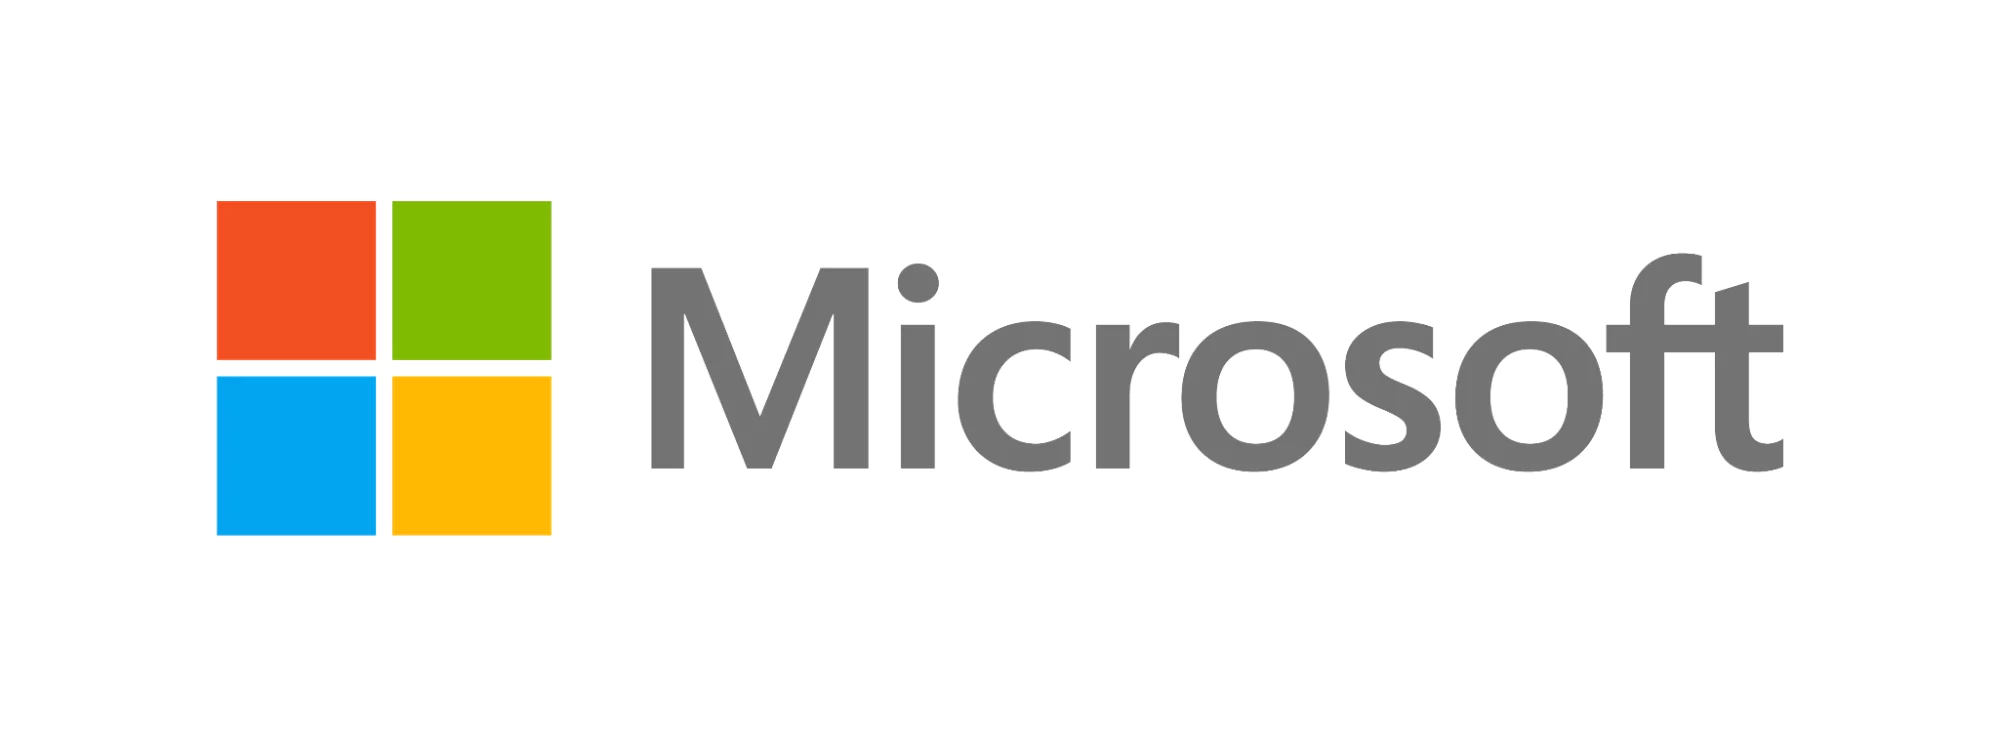 Logotipo da Microsoft, uma janela colorida de quatro painéis em azul, verde, amarelo e vermelho